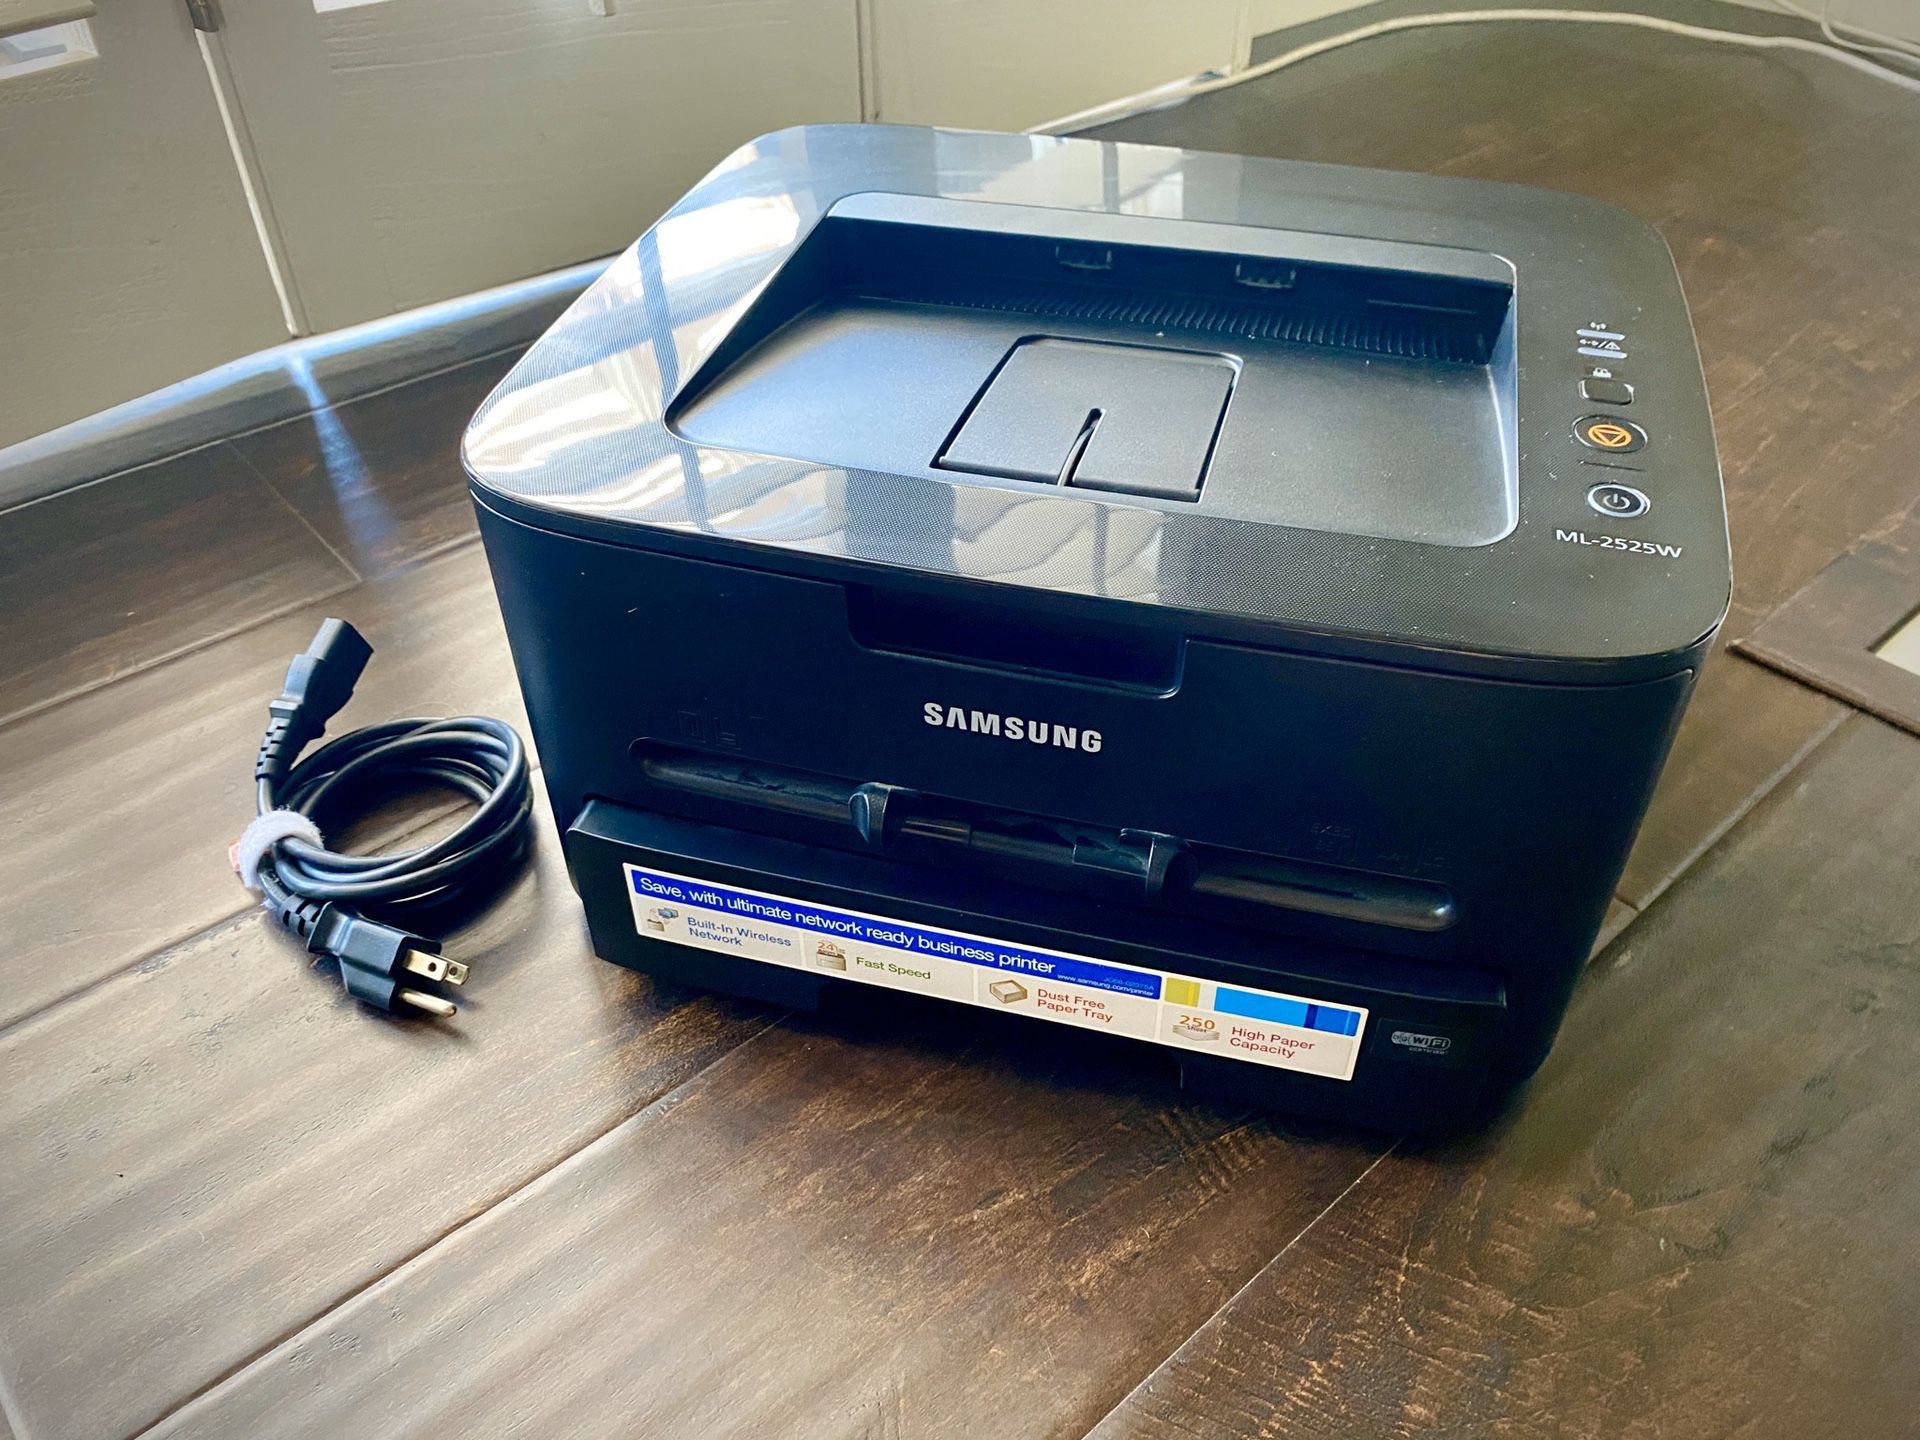 Samsung ML-2525W Laser printer